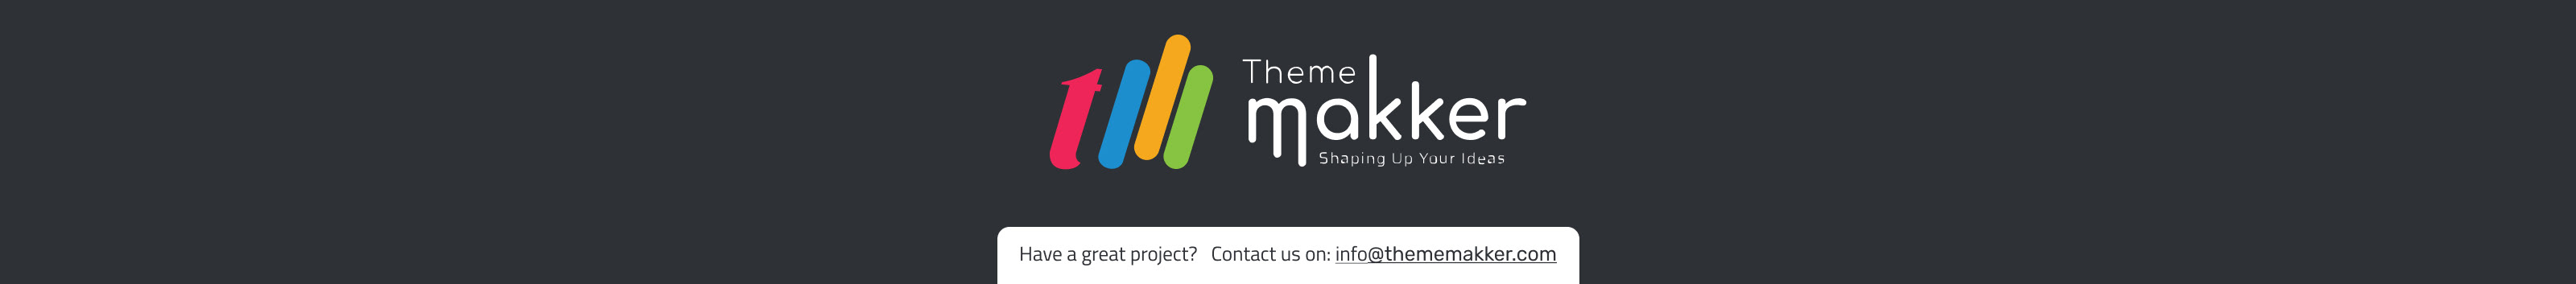 Thememakker Infotech's profile banner